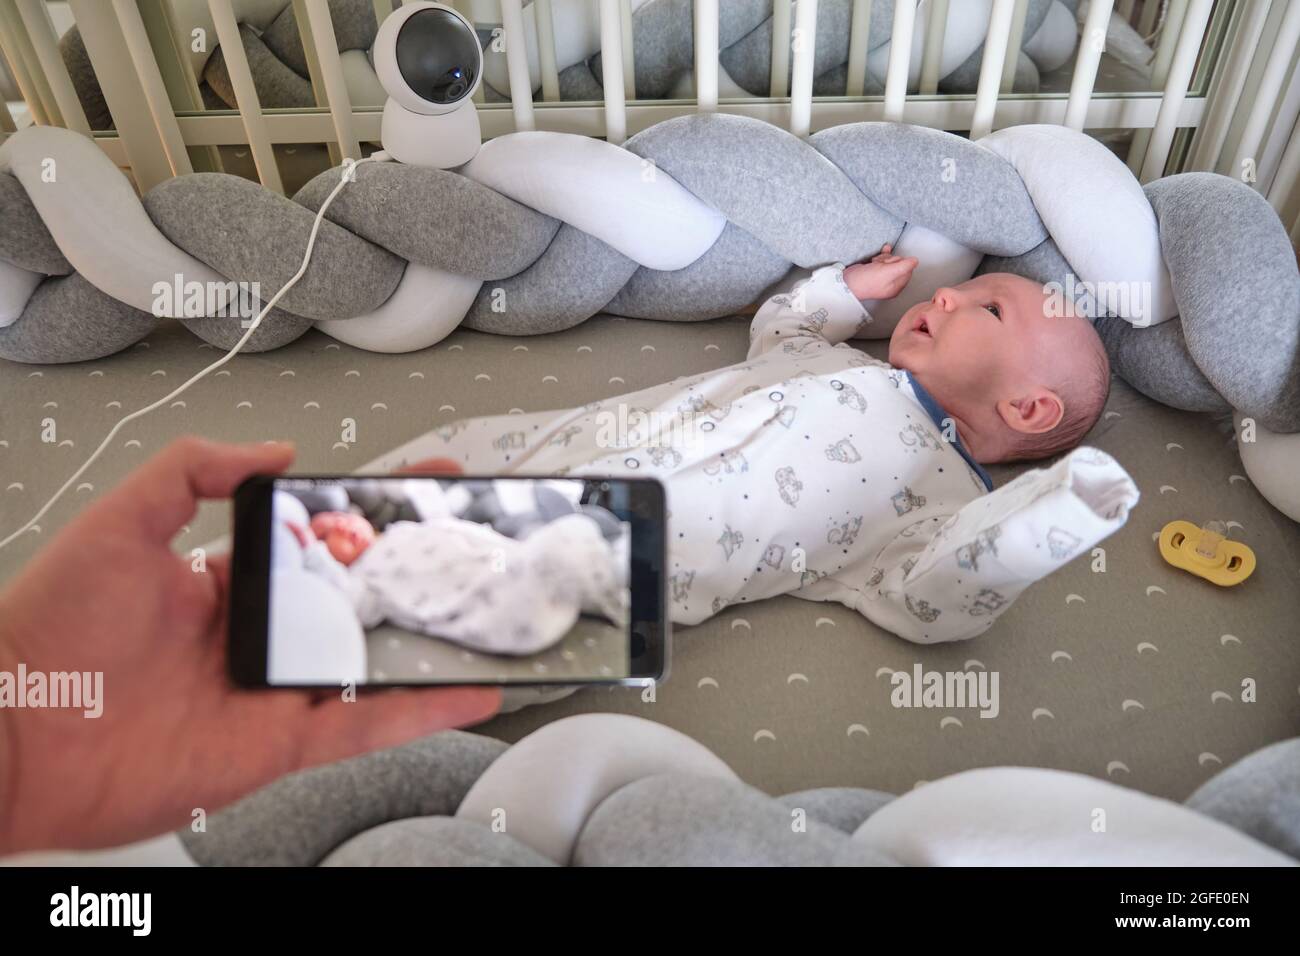 Vigilancia de un bebé recién nacido en una cuna a través de una cámara de  seguridad en línea y el Internet en un teléfono móvil Fotografía de stock -  Alamy